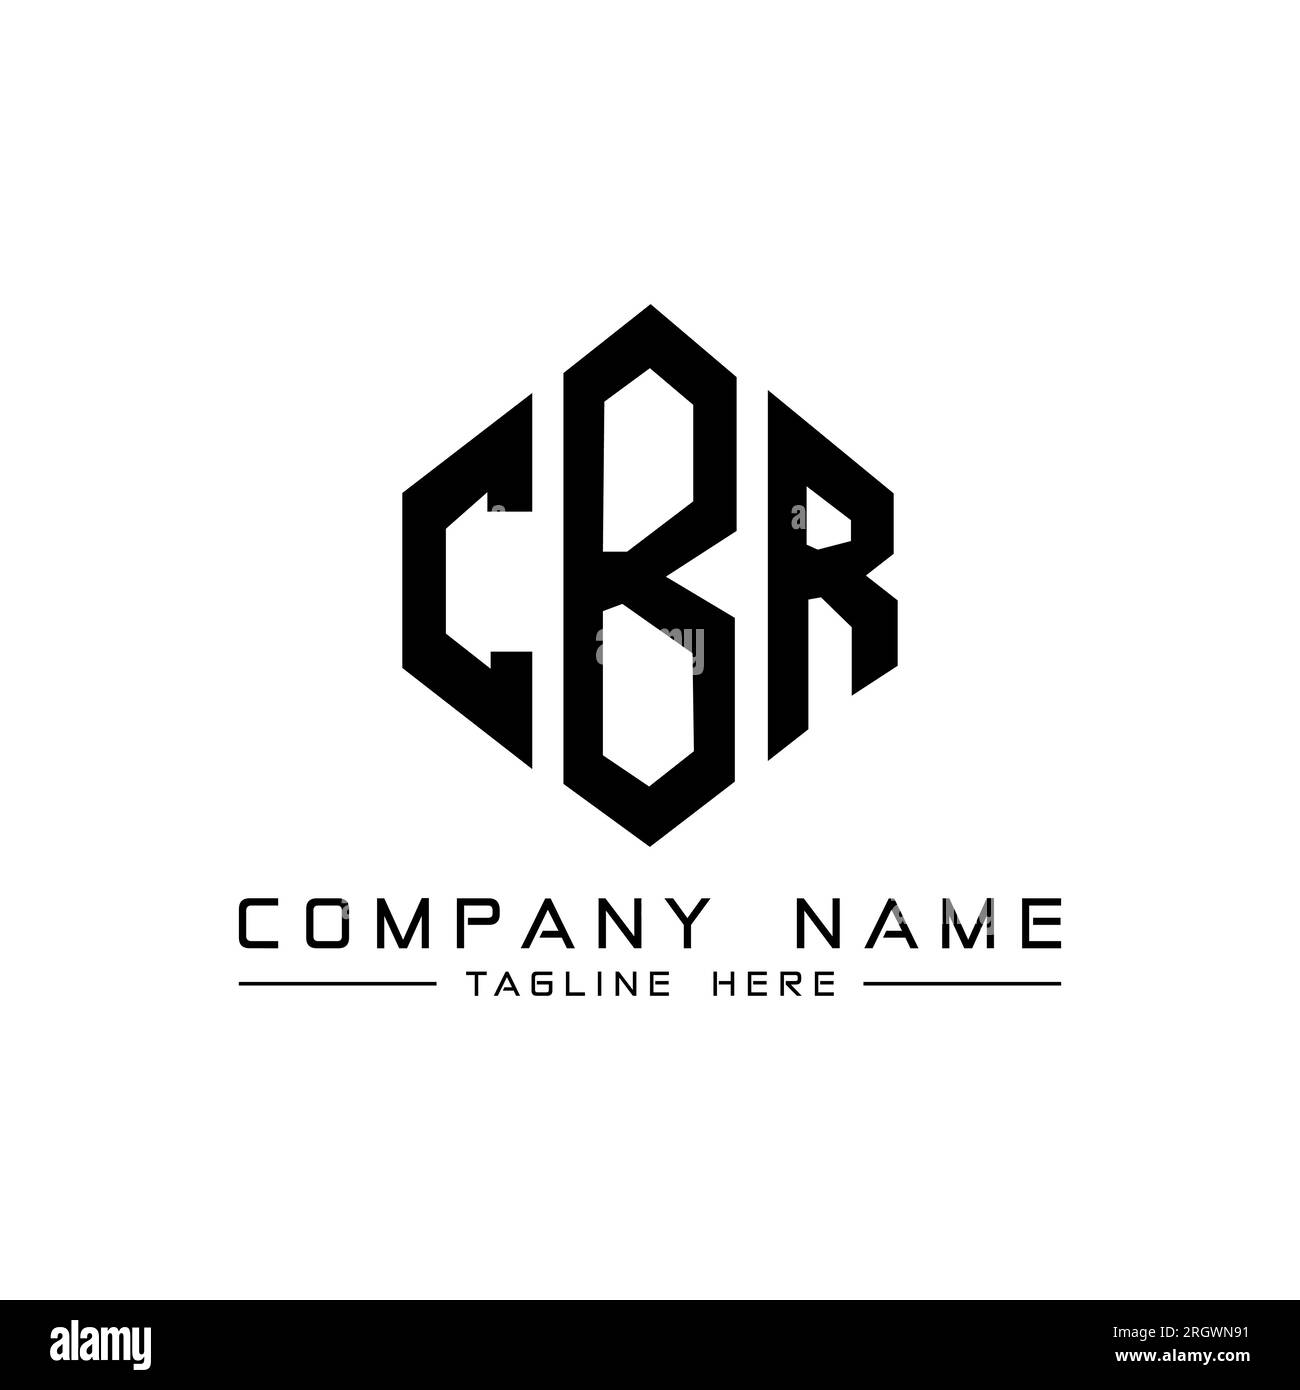 Cbr logo design Black and White Stock Photos & Images - Alamy